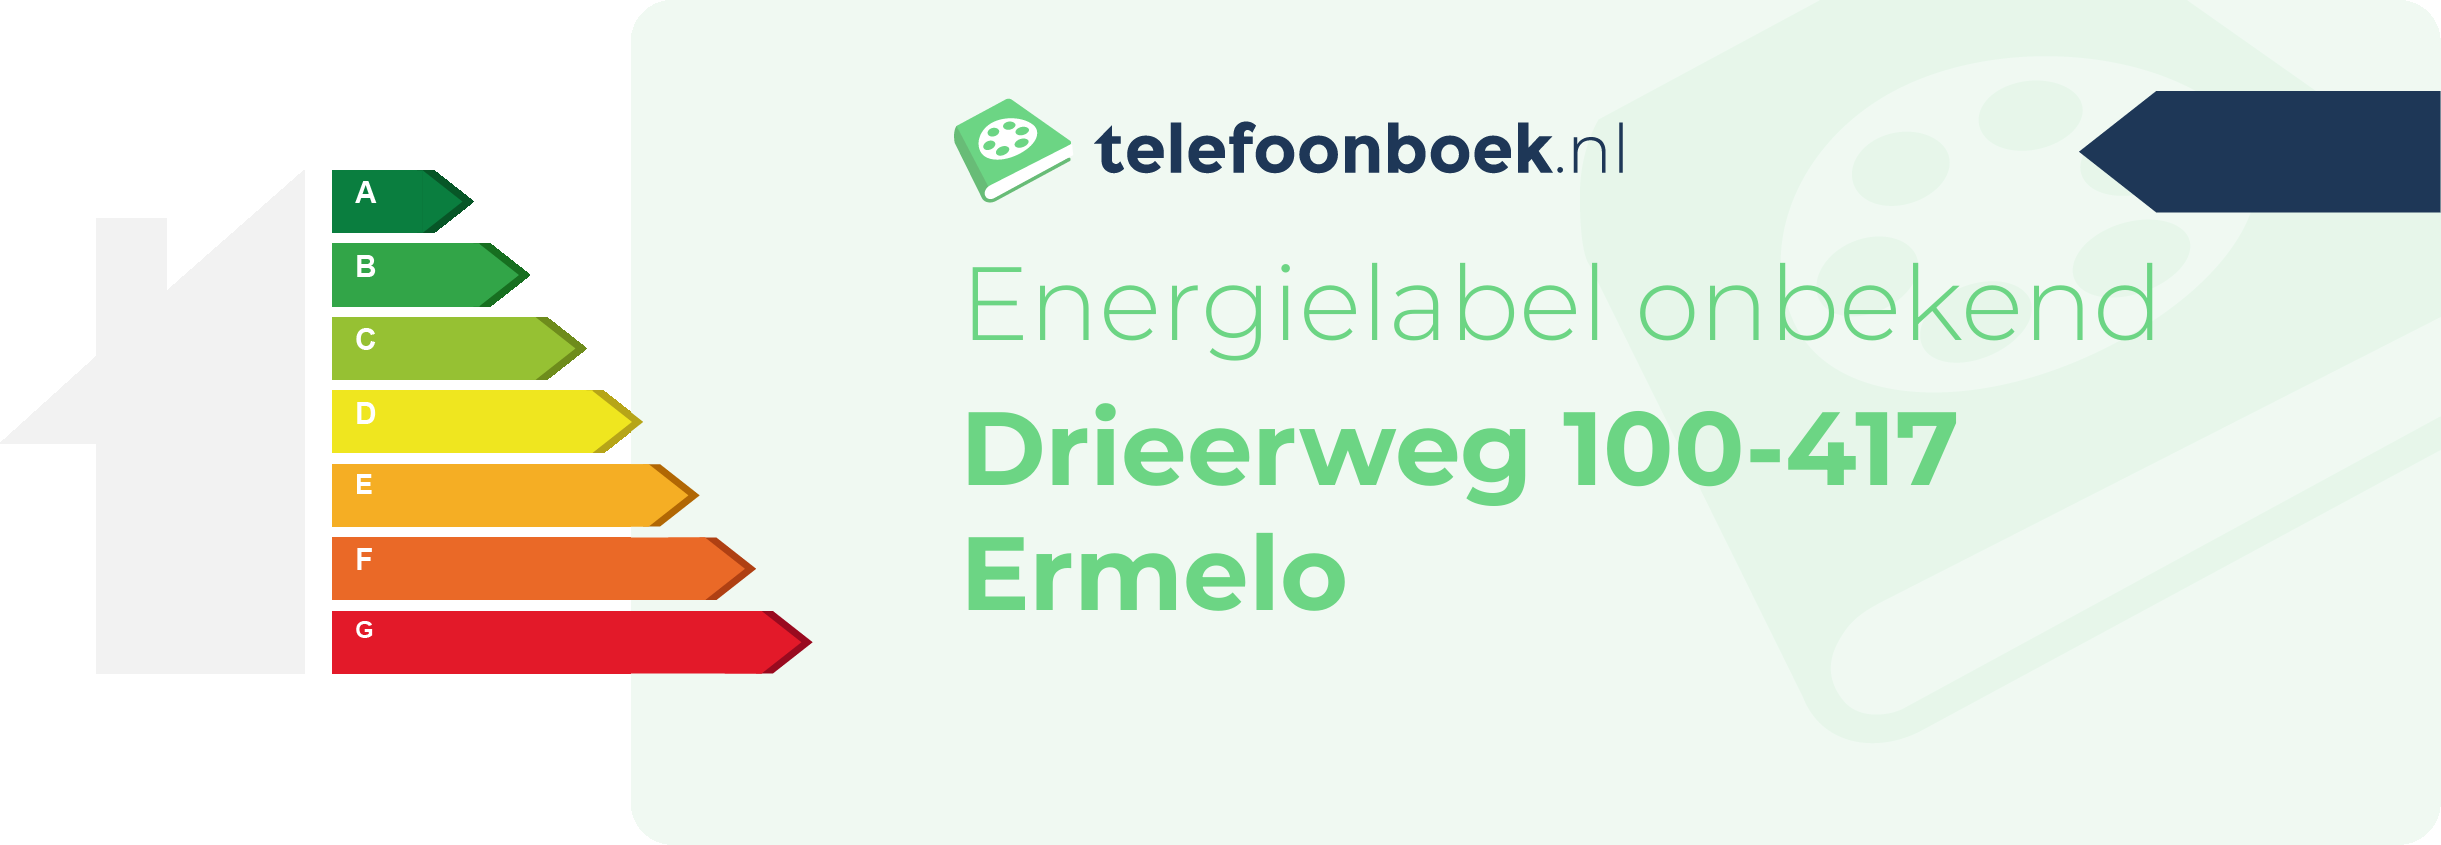 Energielabel Drieerweg 100-417 Ermelo